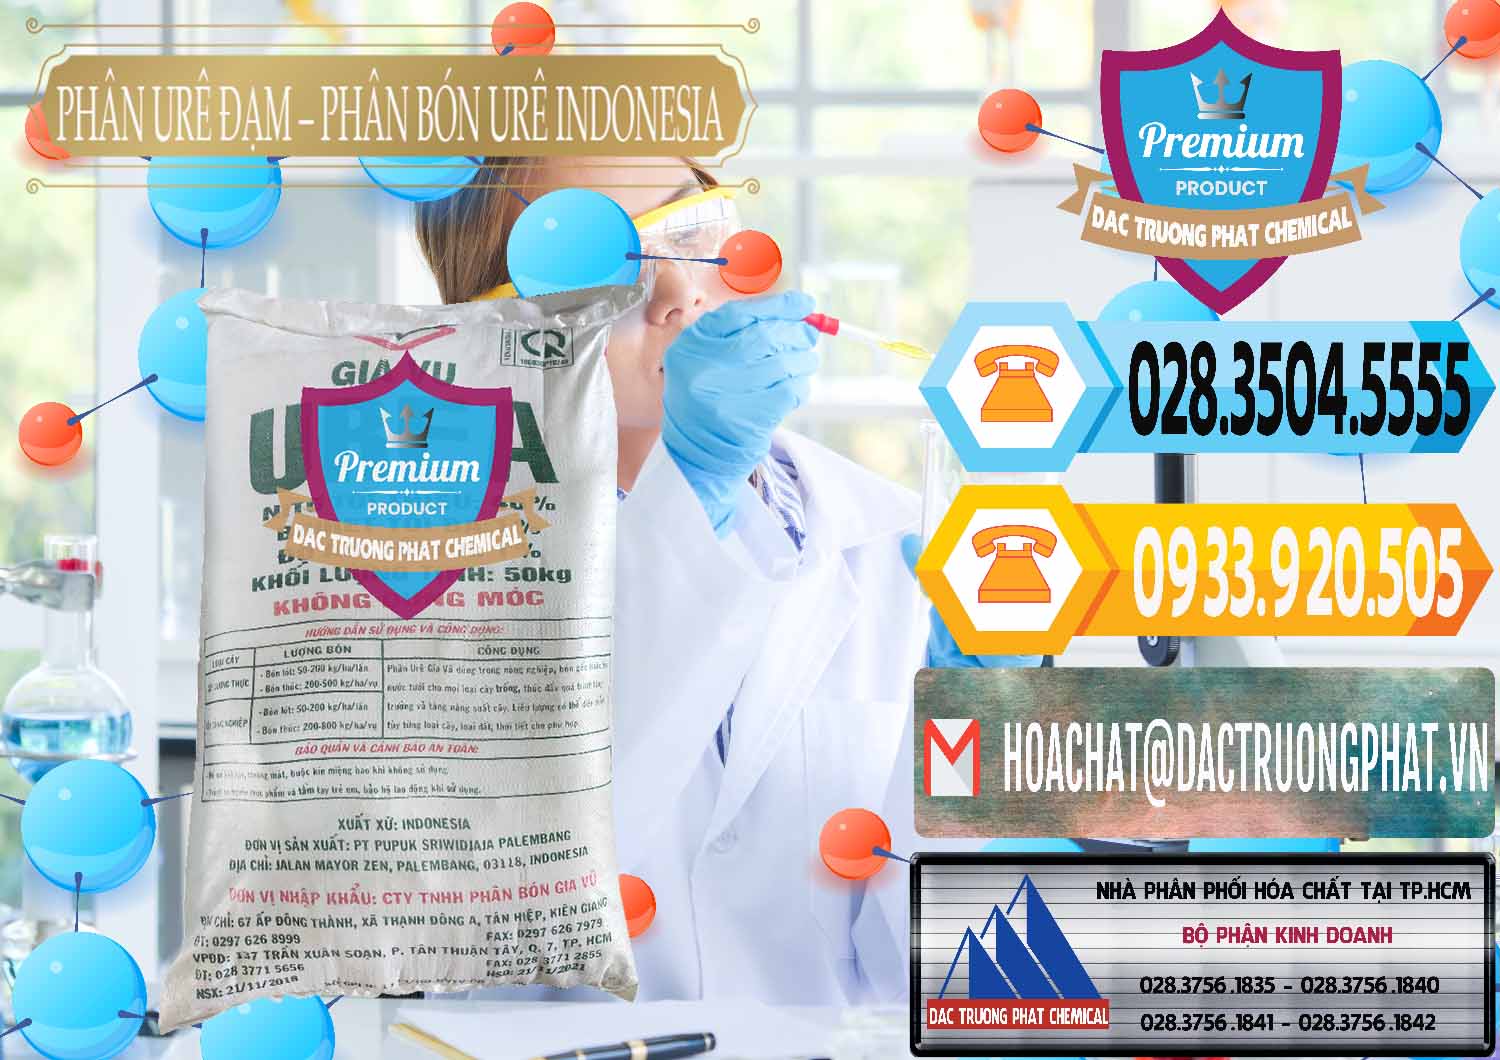 Cty phân phối và bán Phân Urê Đạm – Phân Bón Urê Indonesia - 0194 - Công ty bán _ phân phối hóa chất tại TP.HCM - hoachattayrua.net